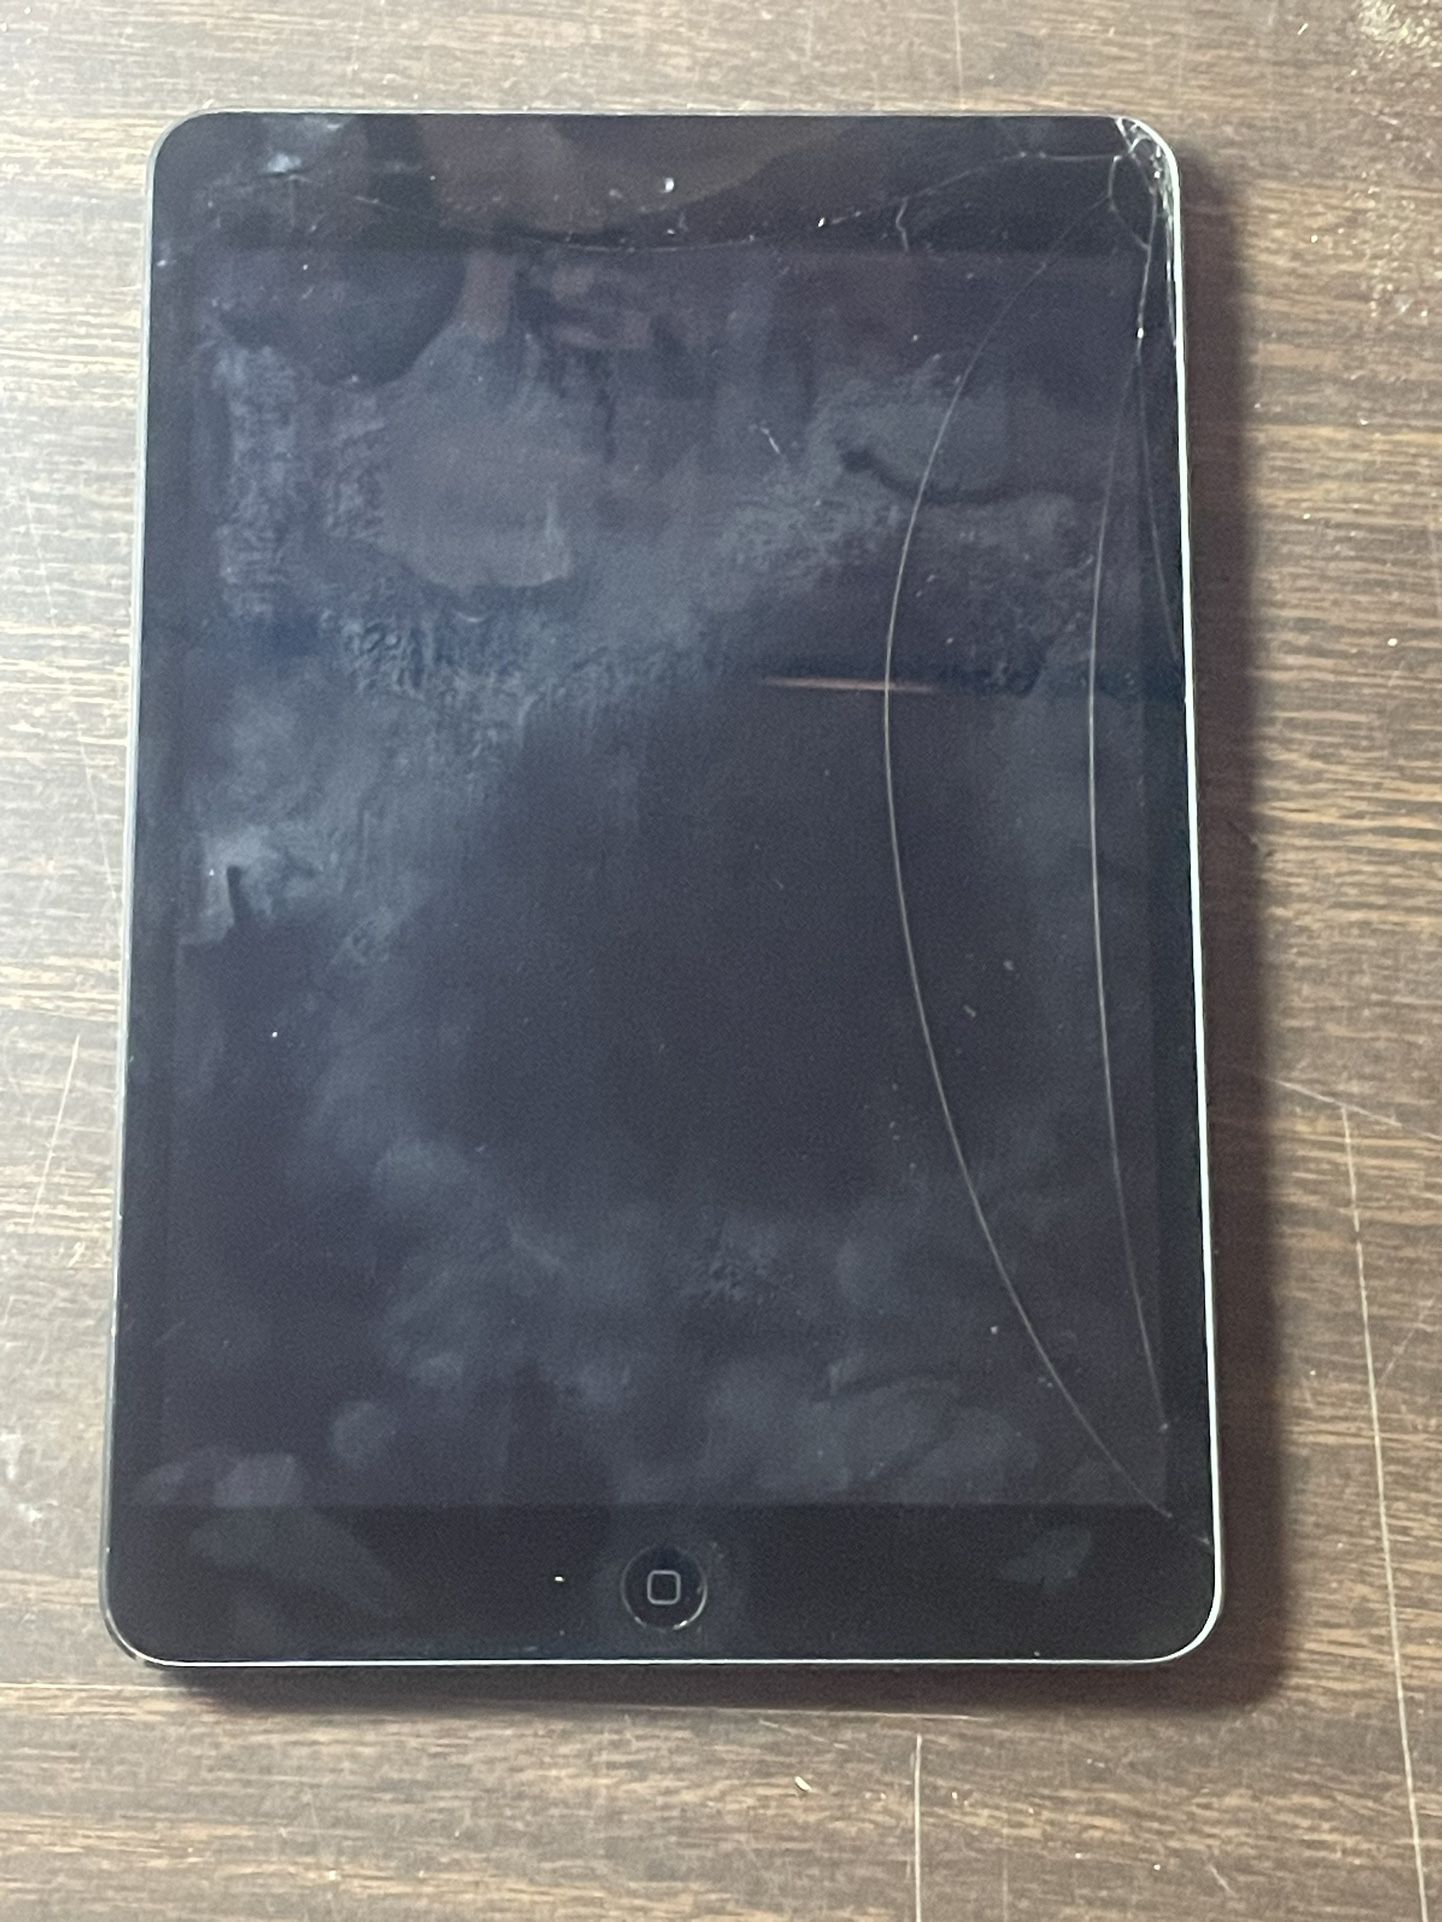 (2) Apple IPad Mini's A1489 Tablet Wi-Fi working screen LOCKED